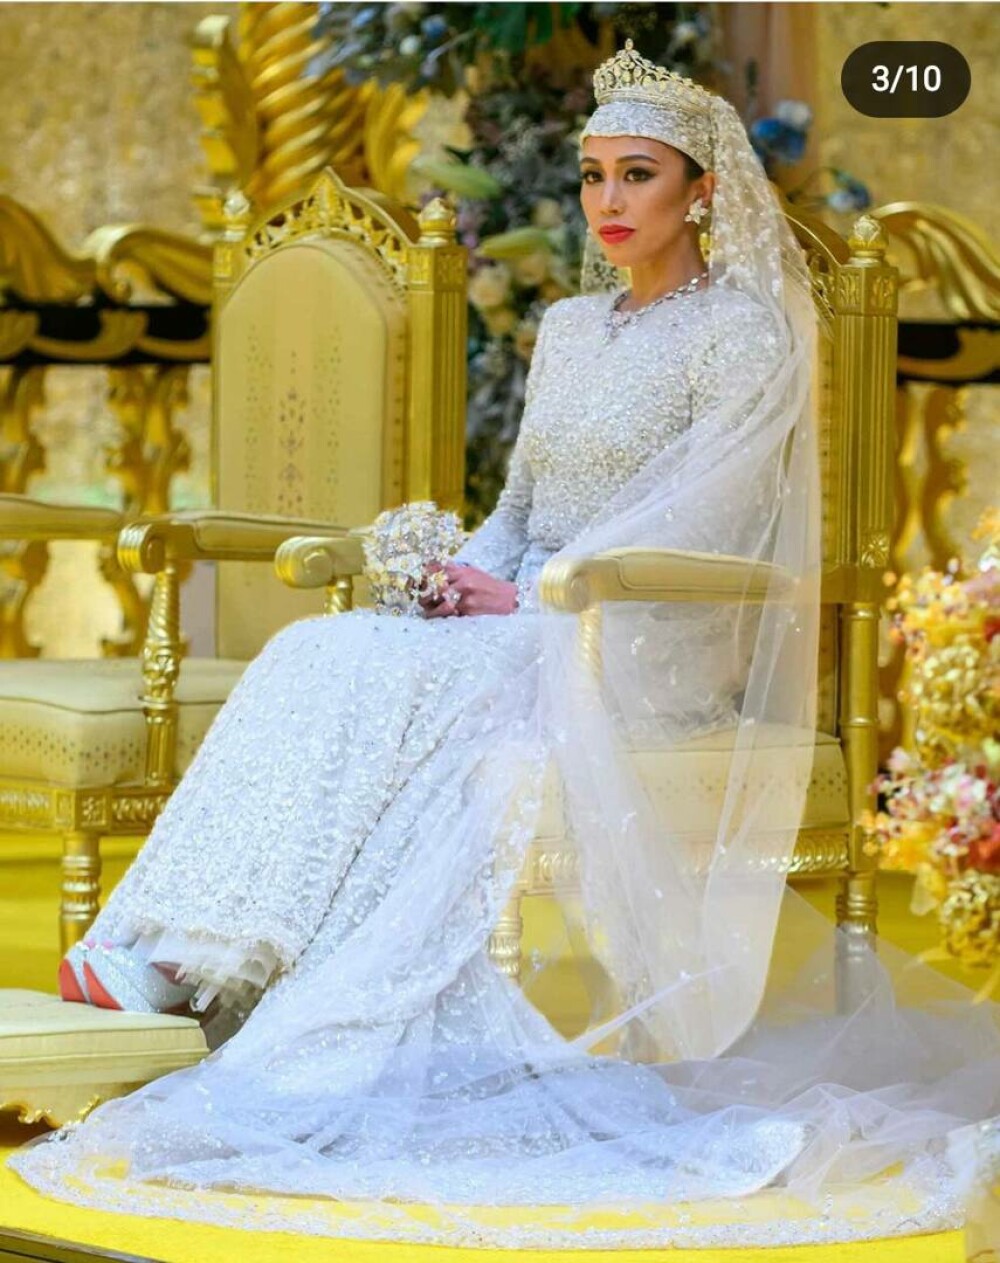 Nuntă regală fastuoasă în Brunei. Prințesa Azemah Bolkiah s-a căsătorit cu verișorul ei, prințul Muda Bahar - GALERIE FOTO - Imaginea 5